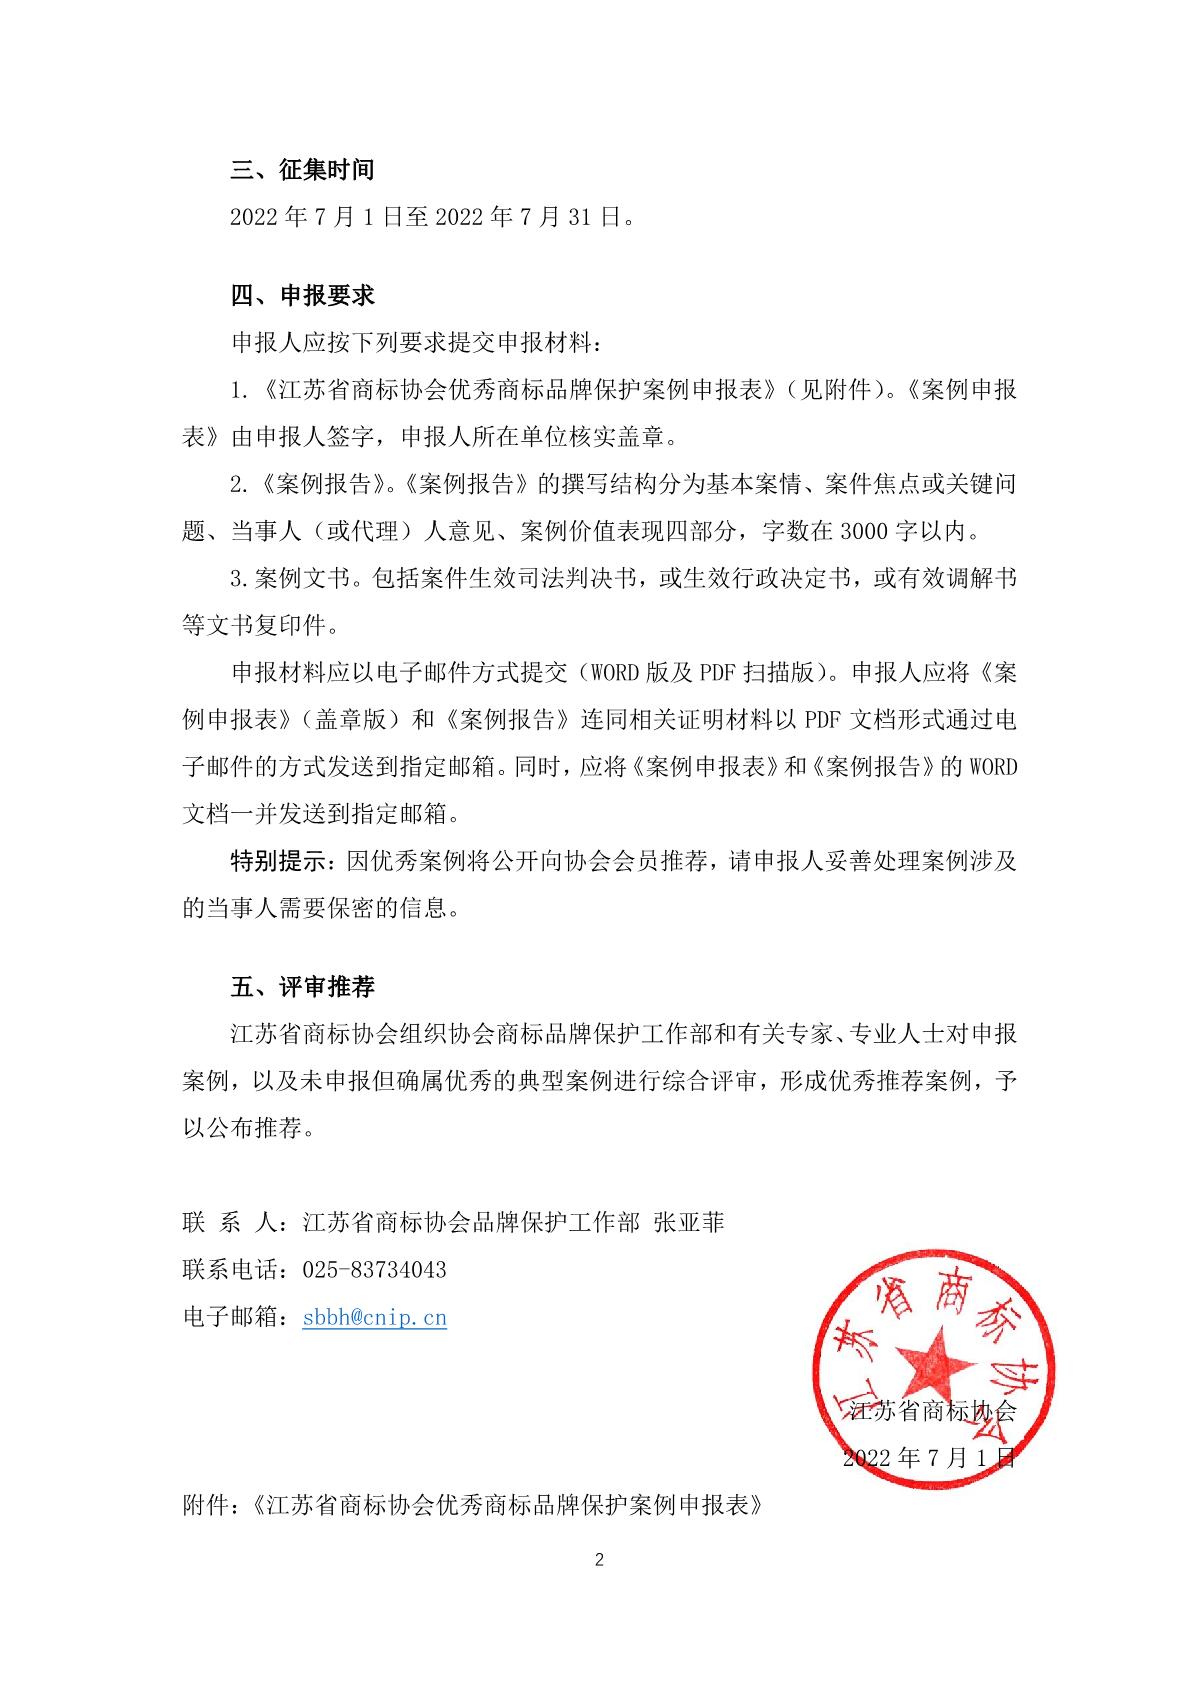 江苏省商标协会关于征集优秀商标品牌案例的公告（含附件）_2.JPG